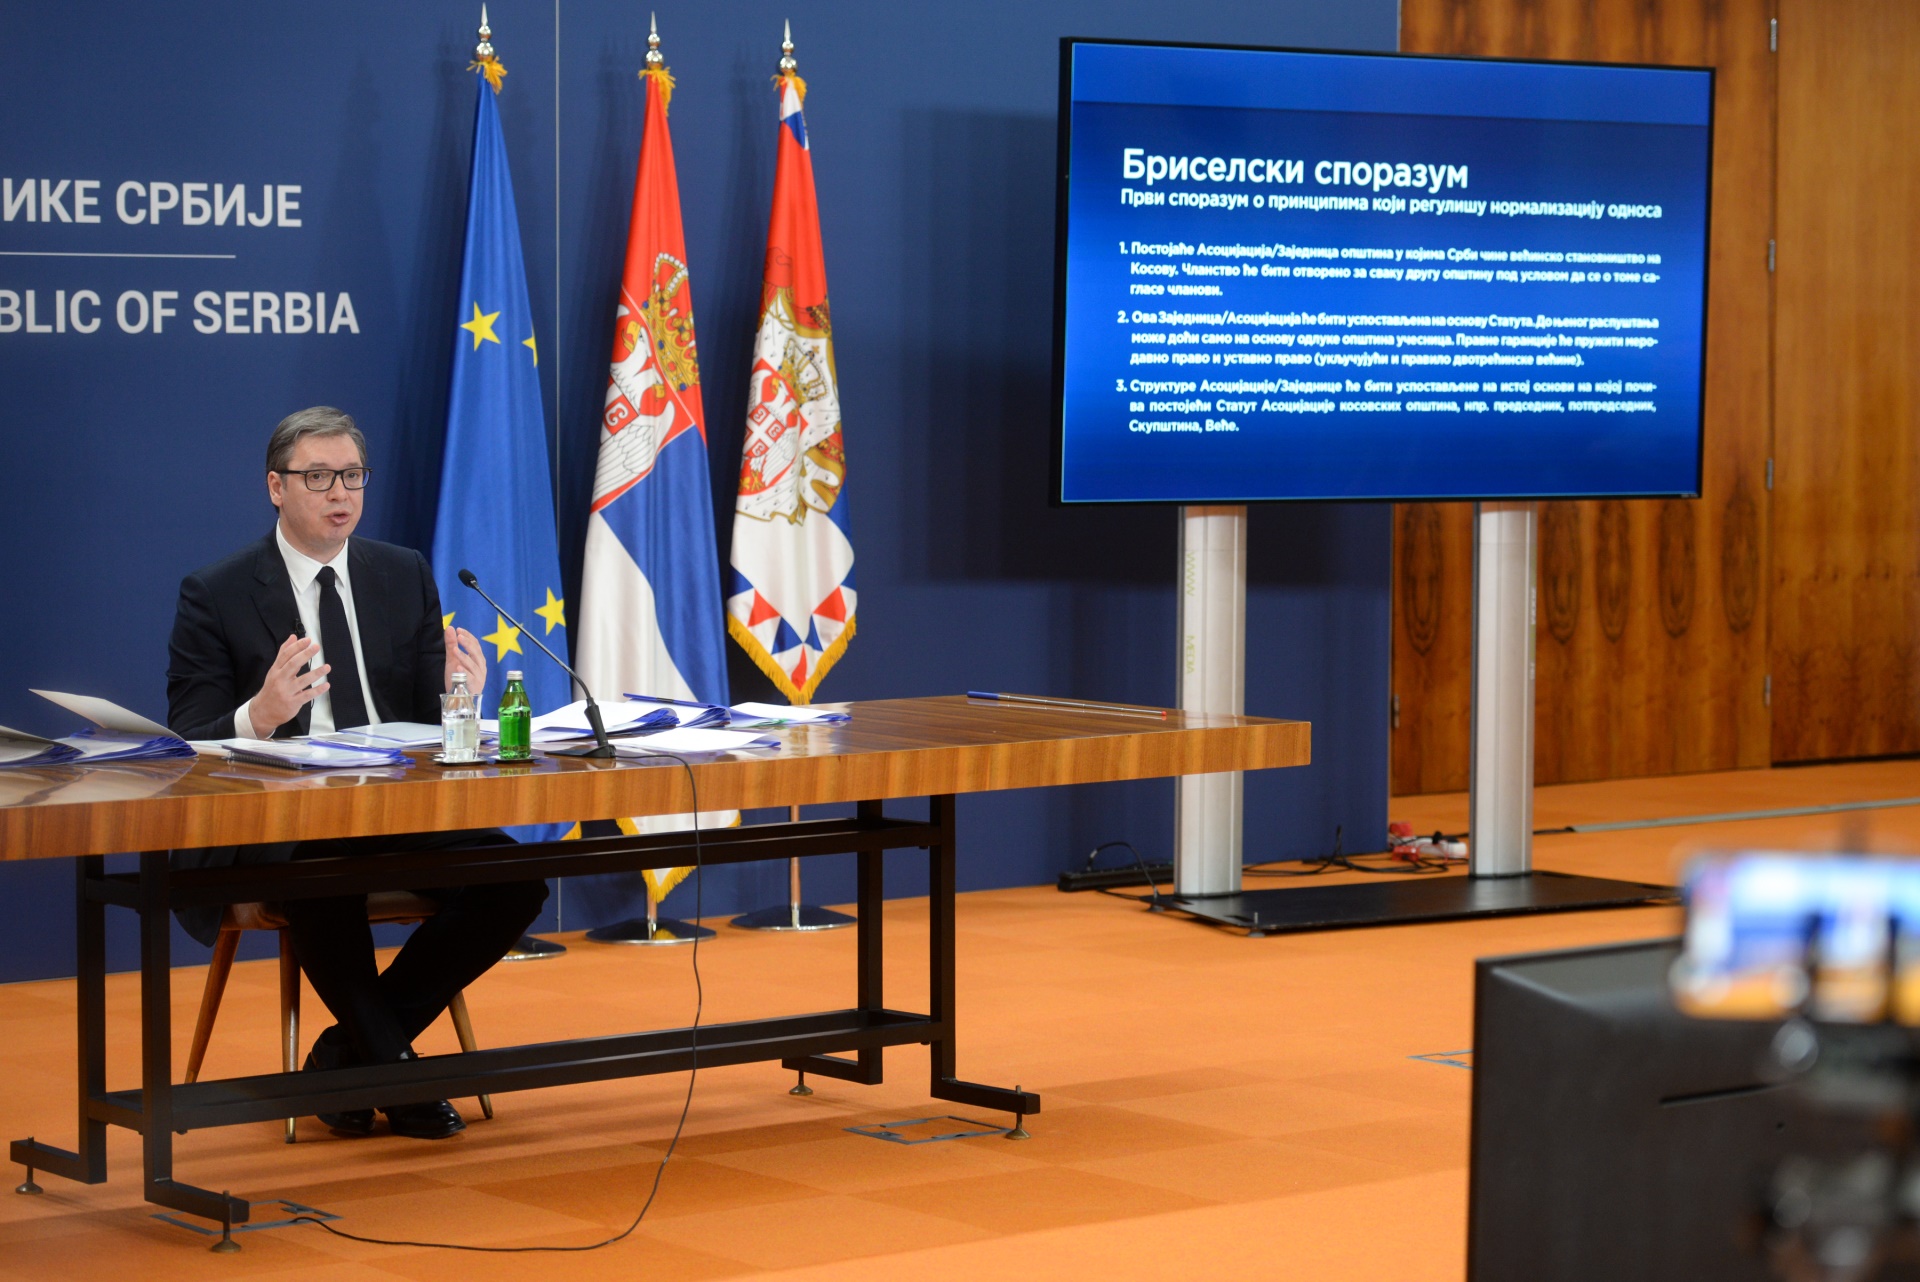 Predsednik Srbije Aleksandar Vucic porucio je danas da ce Srbija, uprkos brojevima iz istrazivanja o raspolozenju gradjana prema EU, nastaviti evropski put i biti snaznije na evropskom putu.